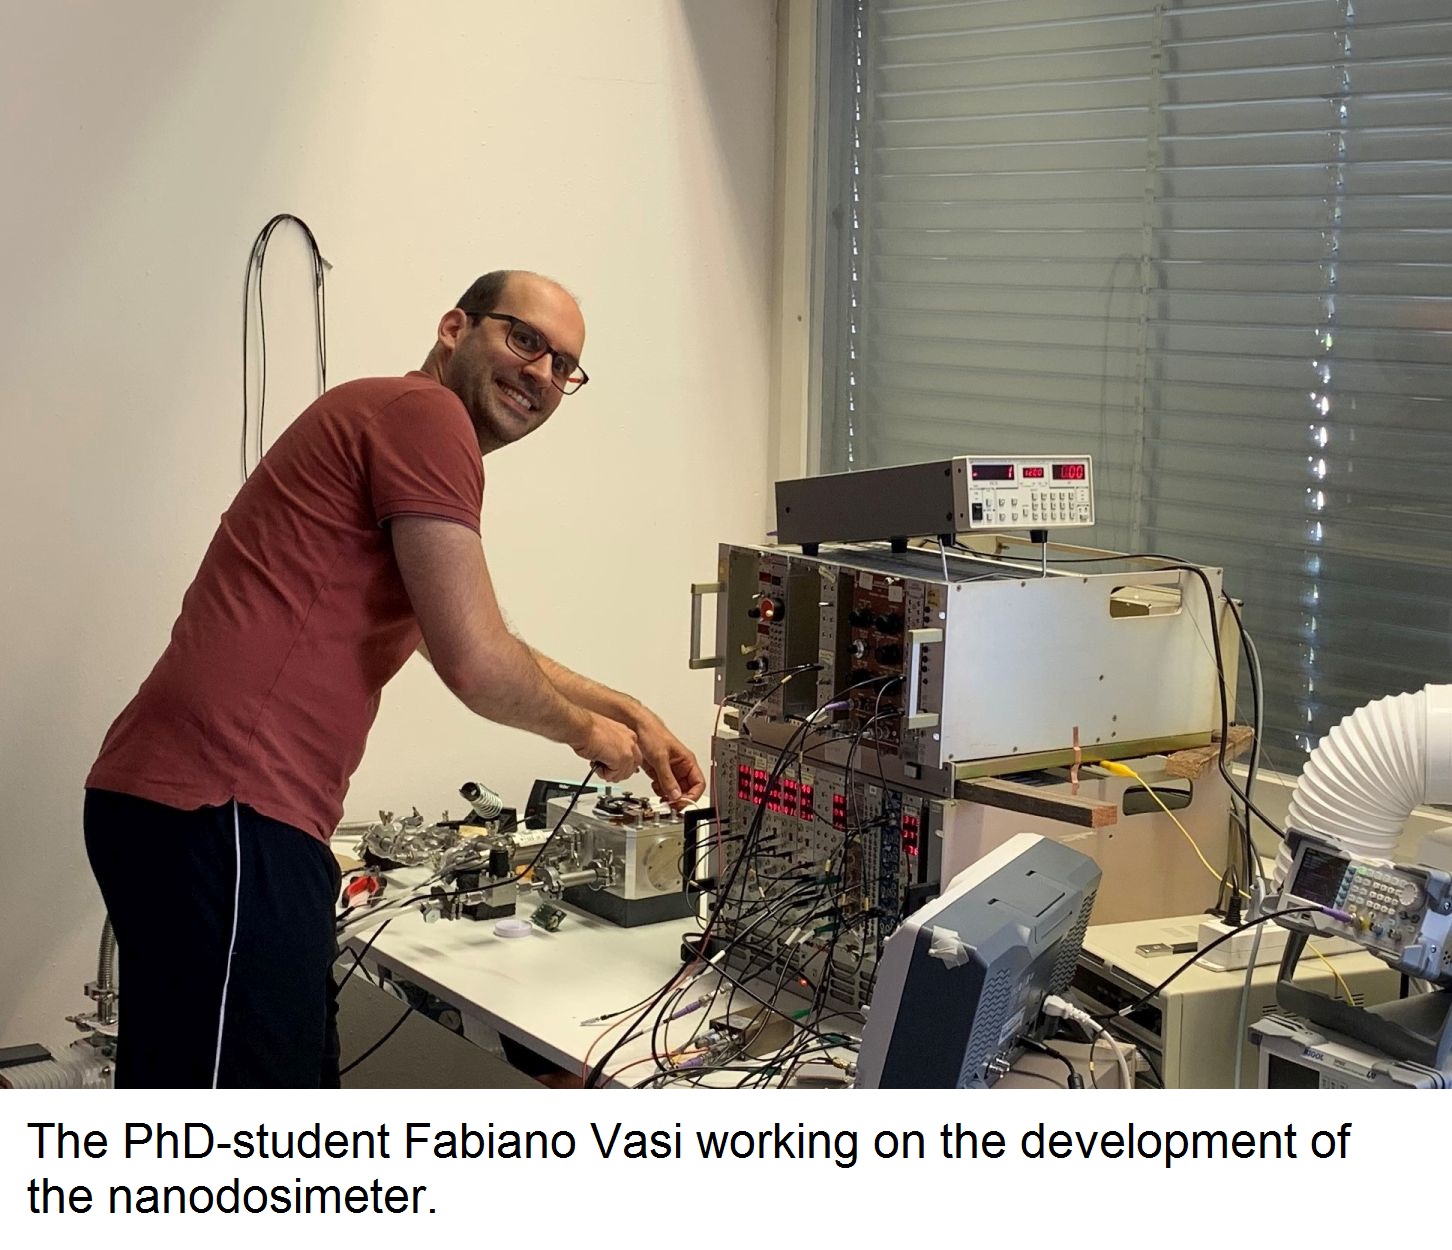 PhD Fabiano Vasi working with the nanodosimeter